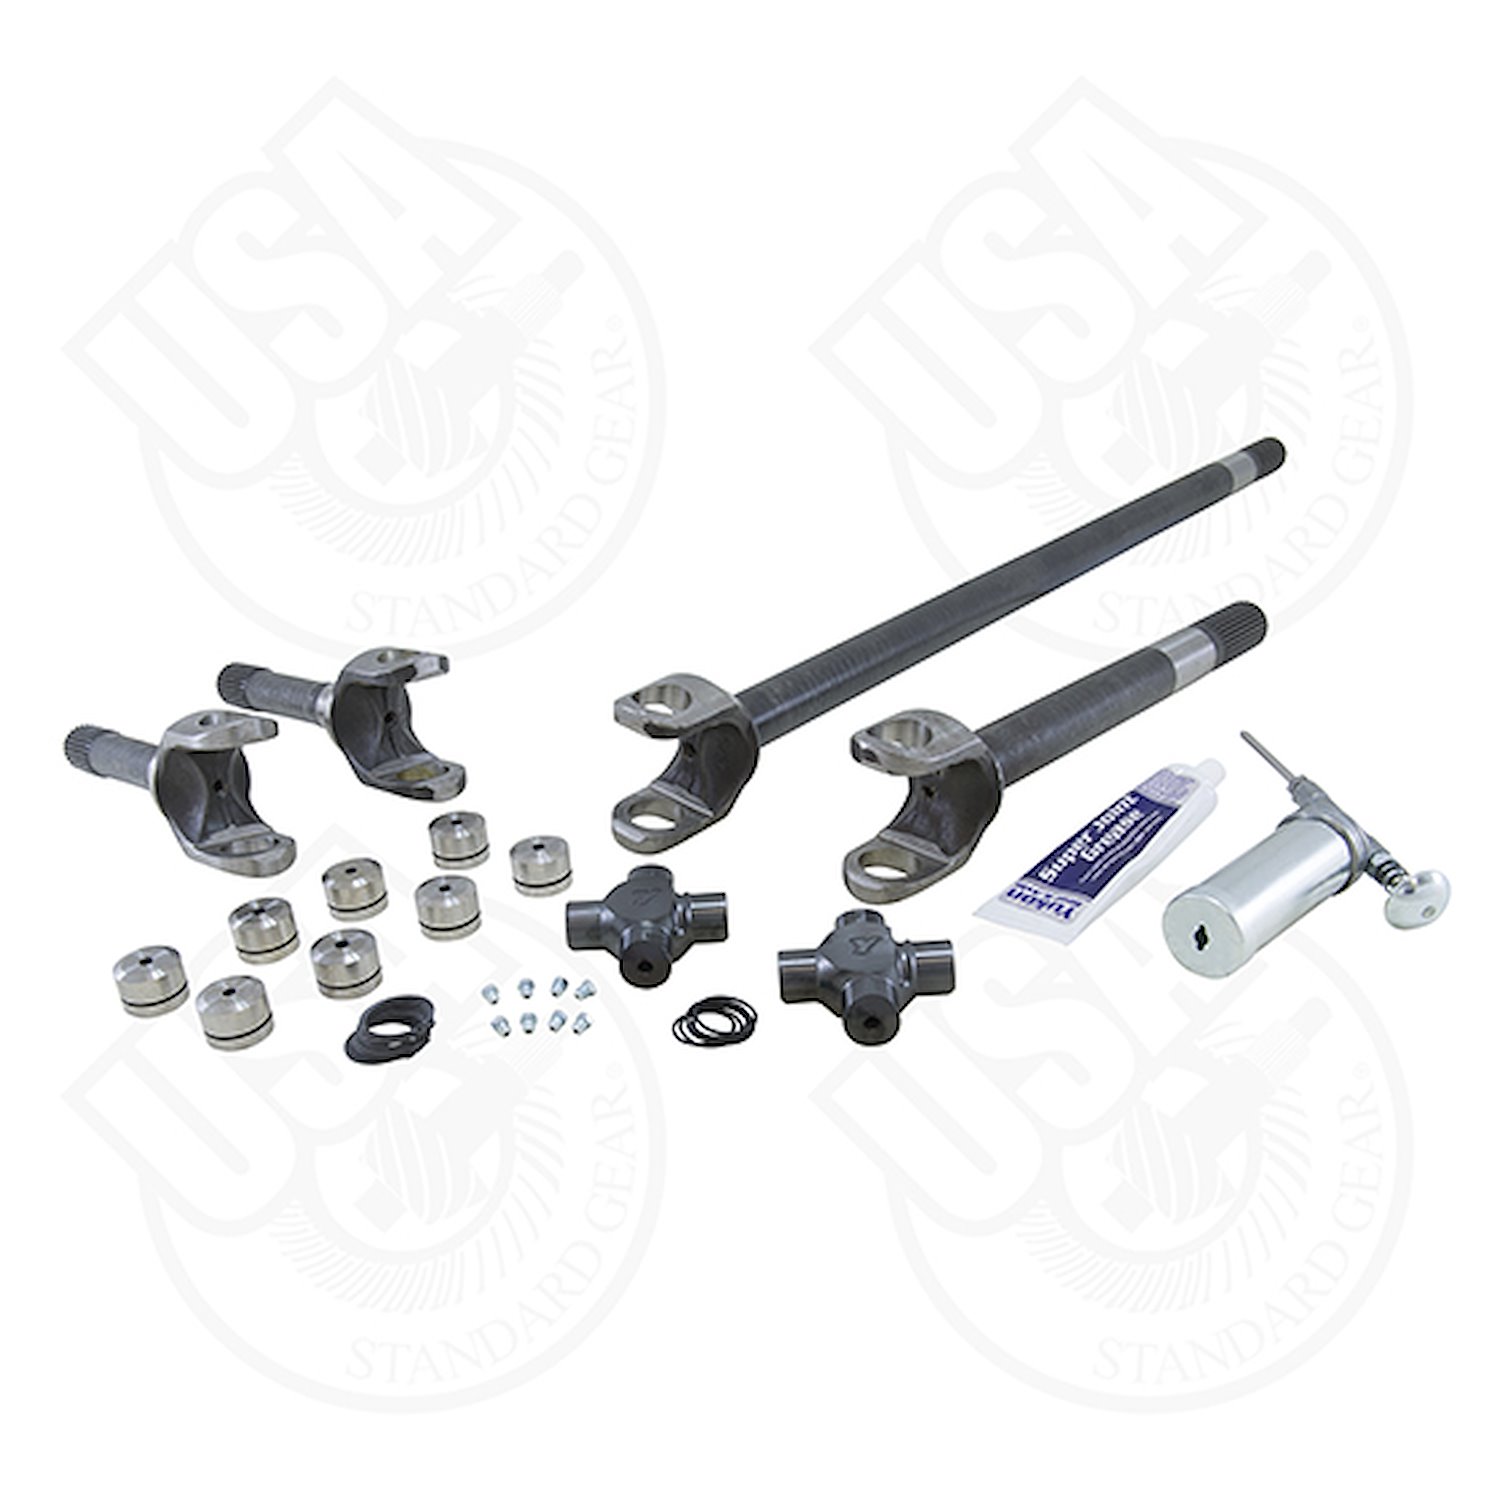 USA Standard 4340 Chrome-Moly replacement axle kit for 82- 83 CJ5 / 82- 86 CJ7 Dana 30 27 spline w/S